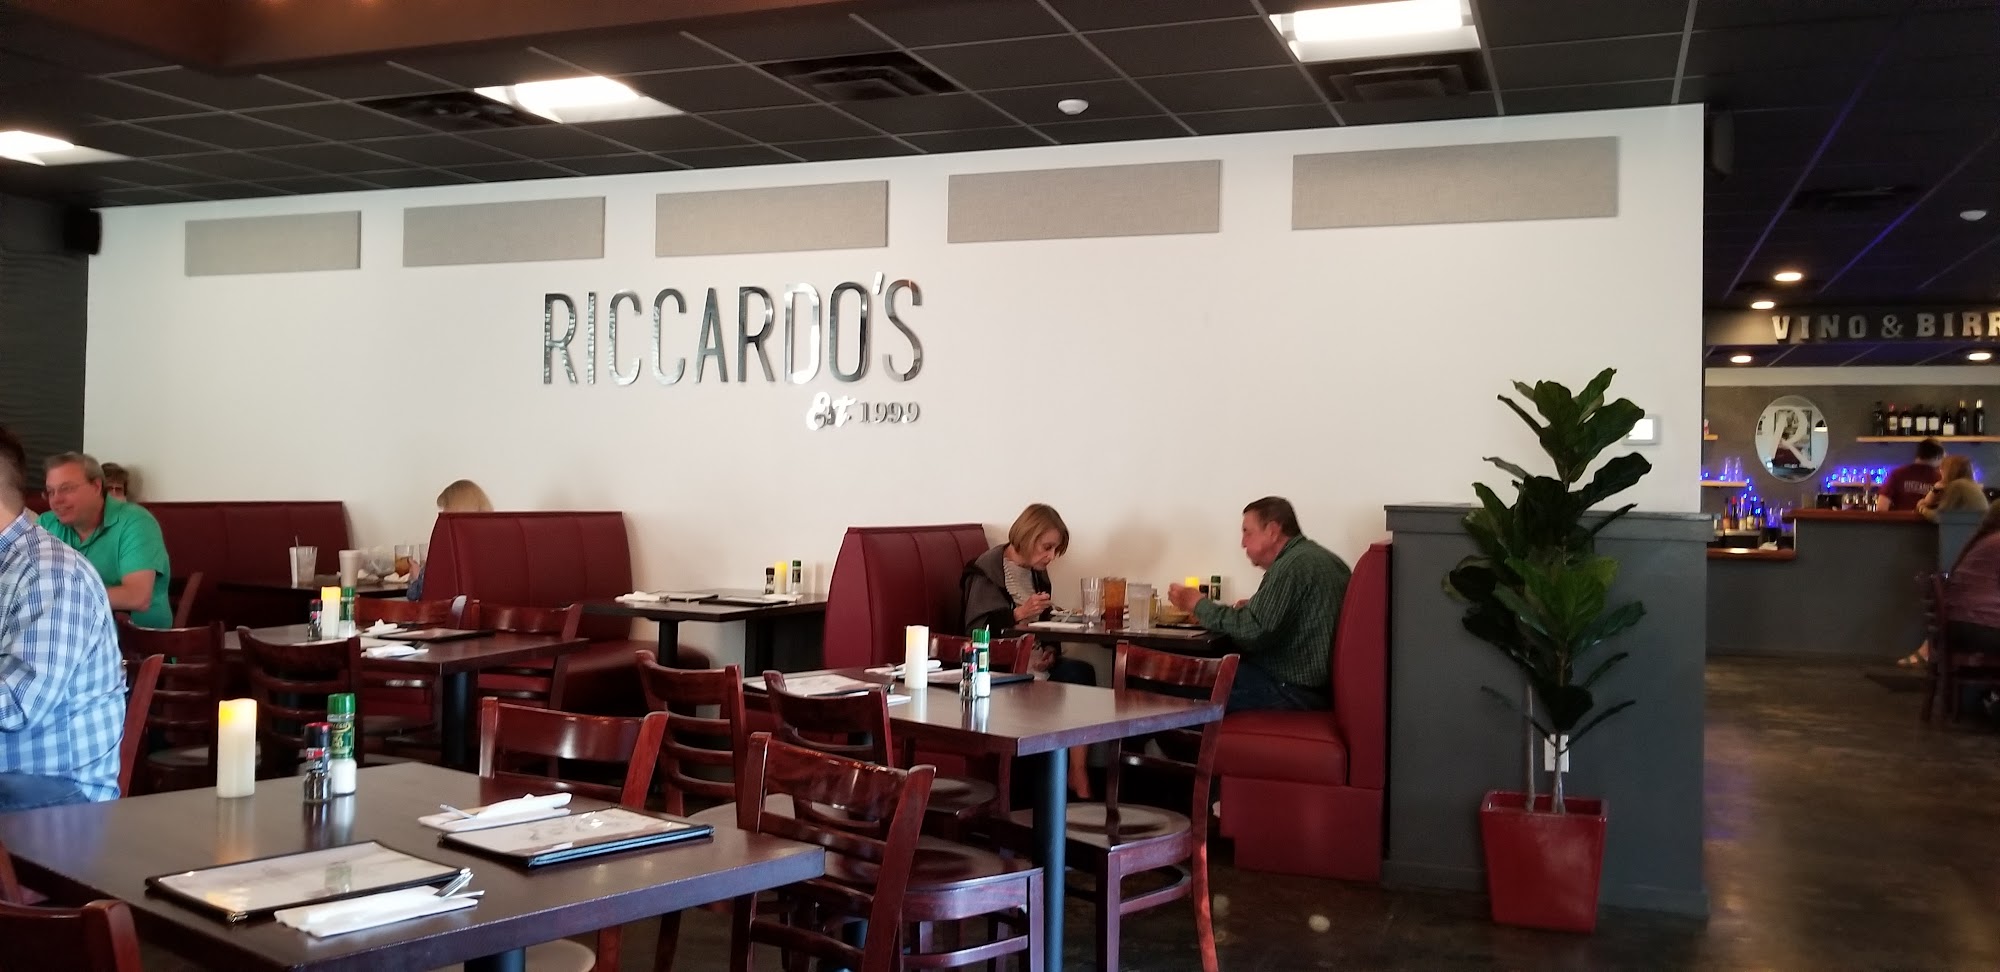 Riccardo's Restaurant